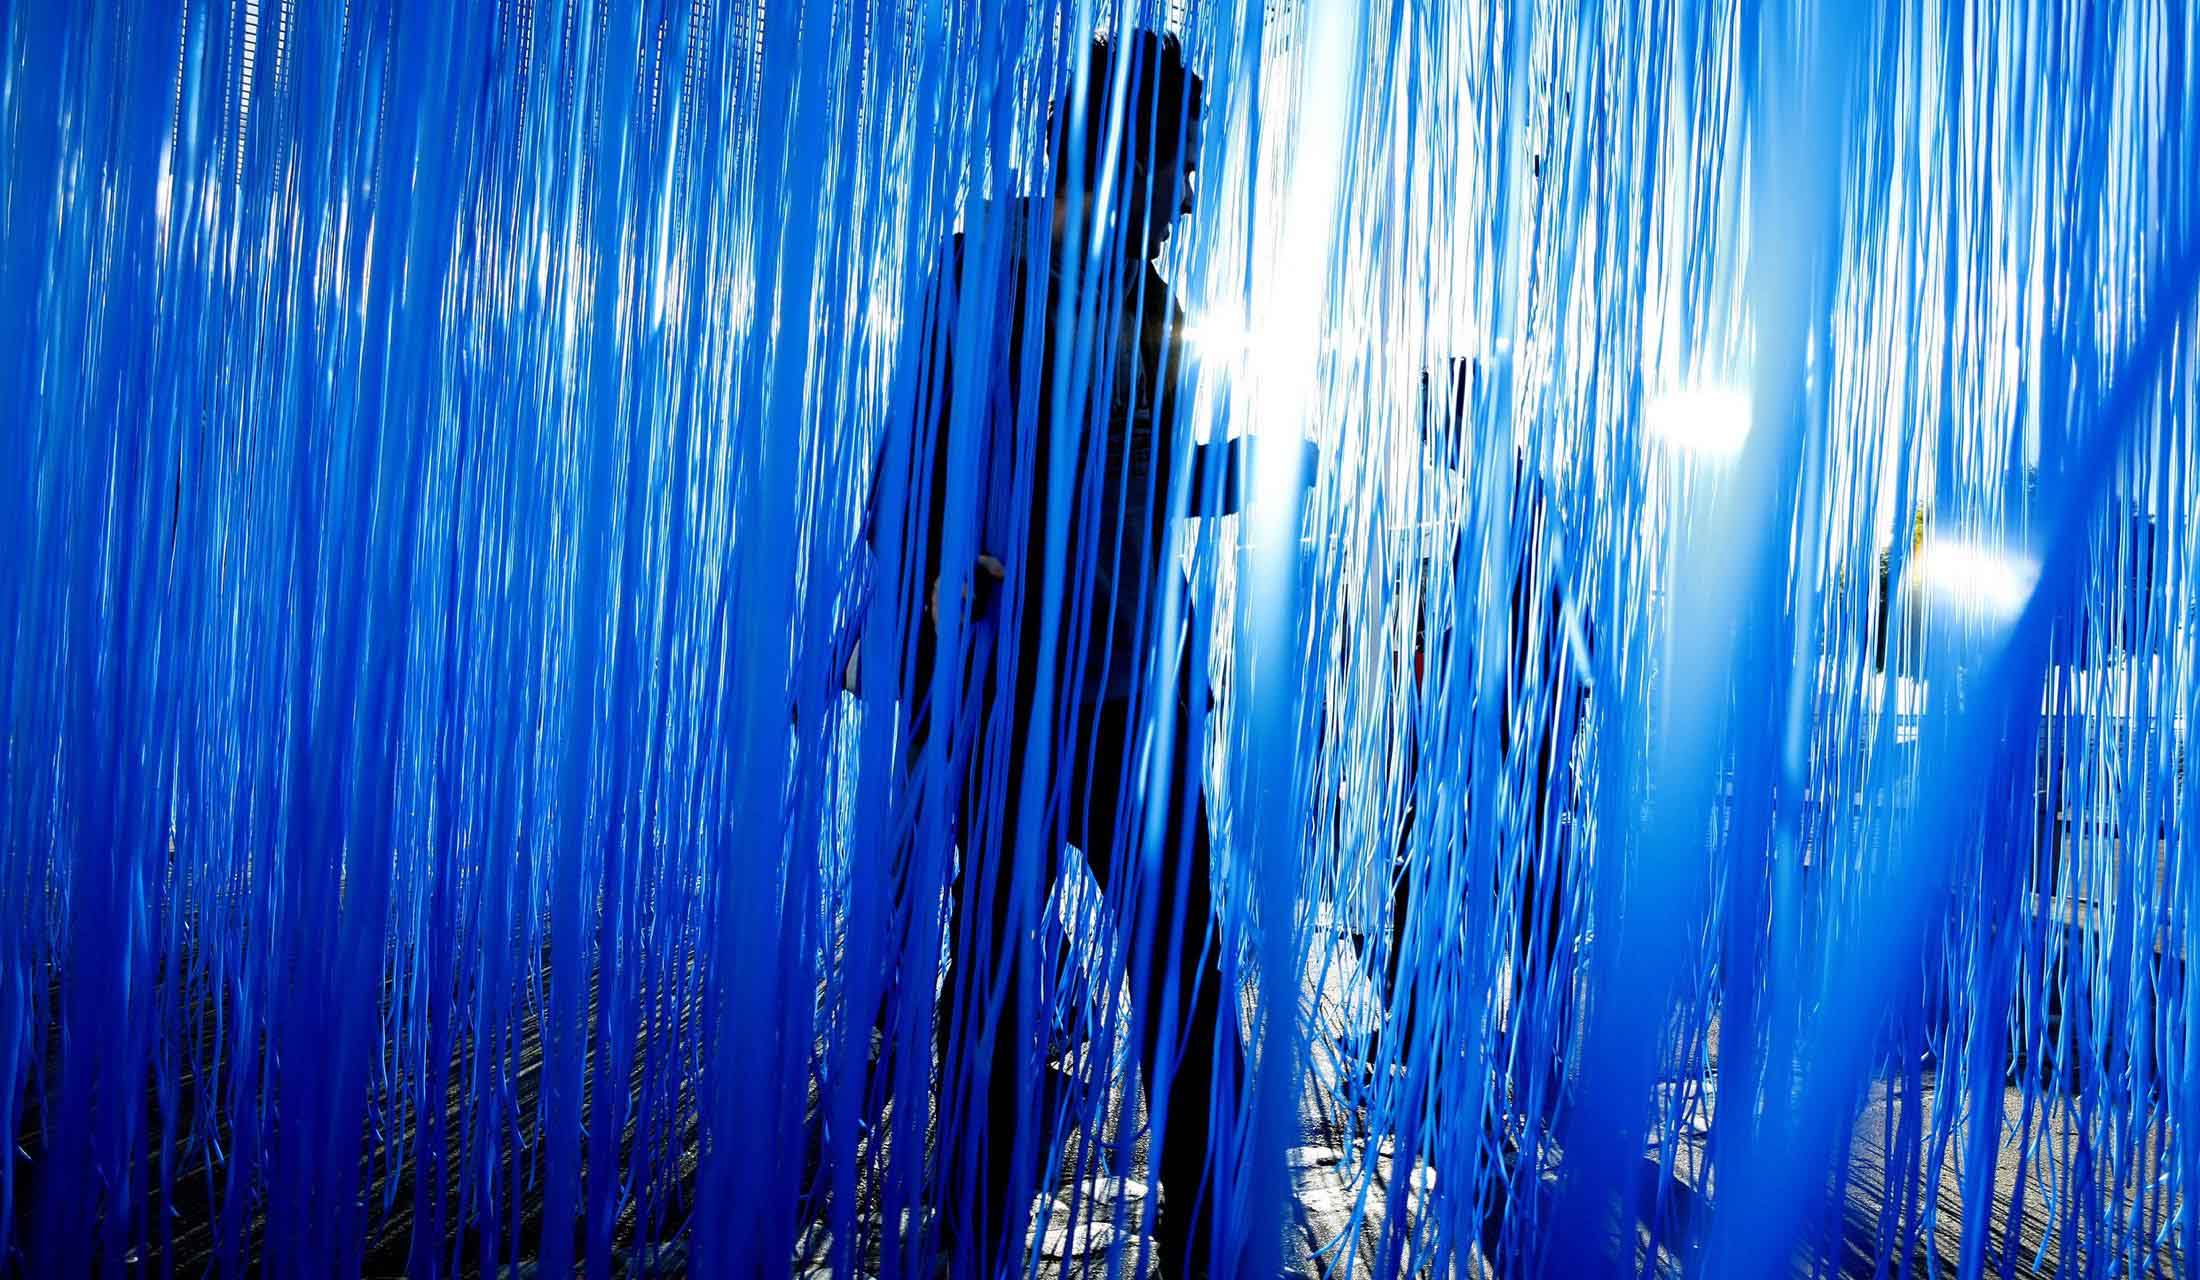 エスパス ルイ・ヴィトン東京のヘスス・ラファエル・ソトの展示作品「Penetrable BBL Bleu」